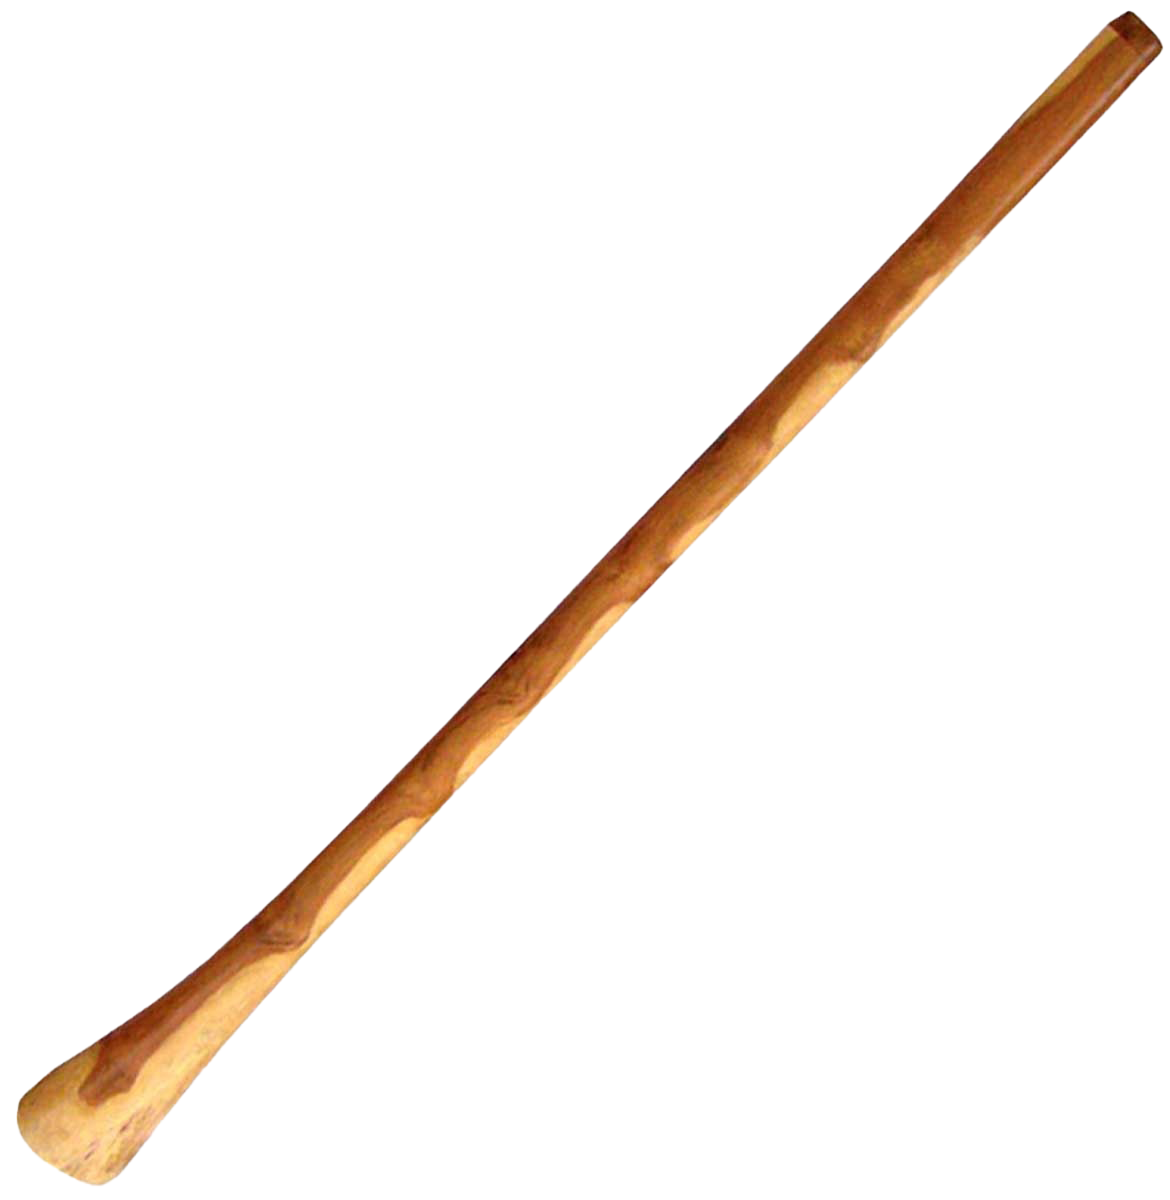 Imagen PNG del instrumento de viento de Didgeridoon de alta calidad